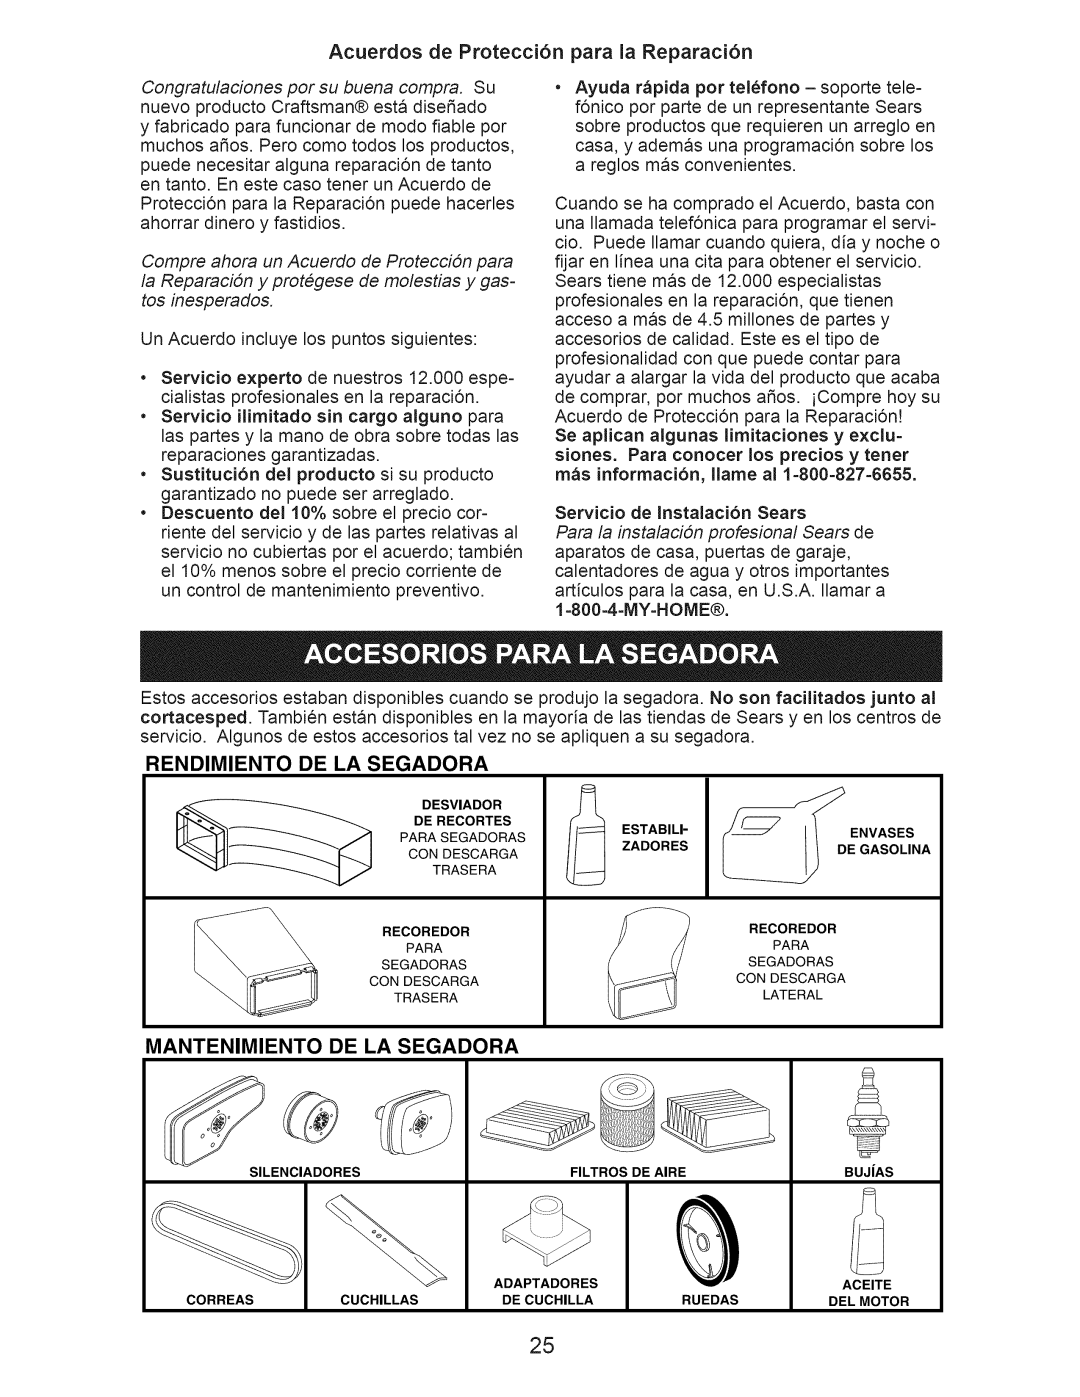 Craftsman 37411 manual Acuerdos de Protecci6n para la Reparaci6n, Rendimiento De La Segadora, Mantenimiento De La Segadora 